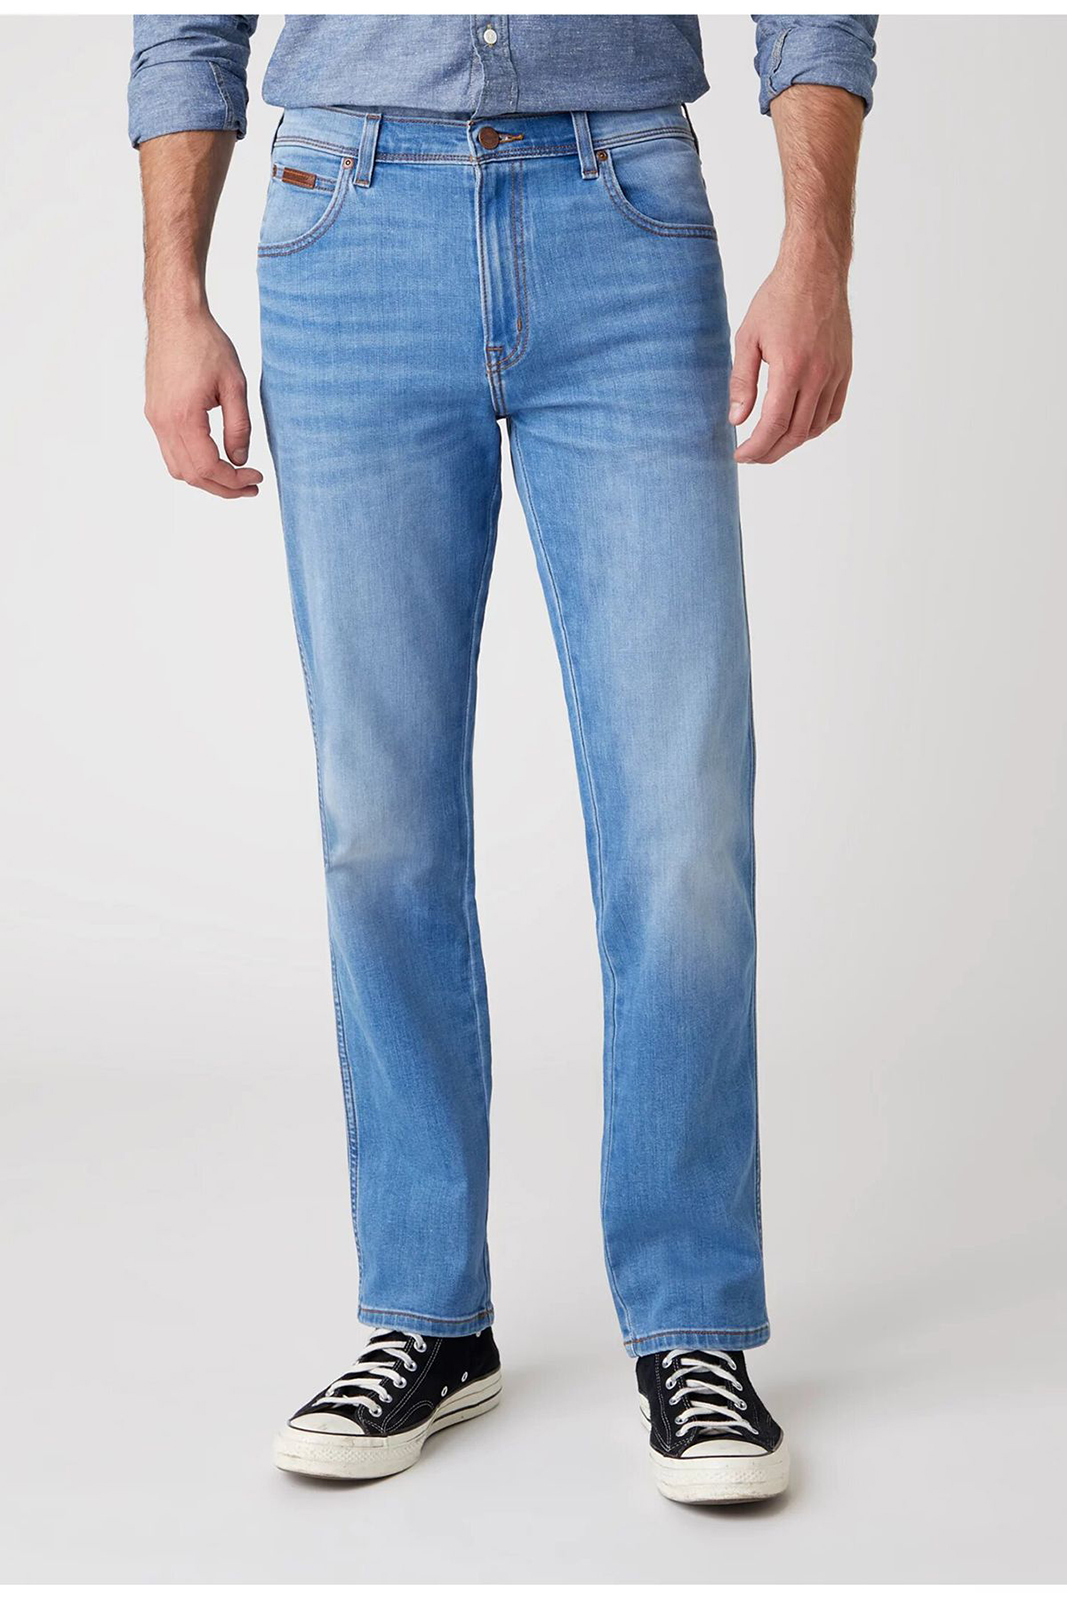 фото Джинсы мужские wrangler men texas heat rage jeans синие 30/34